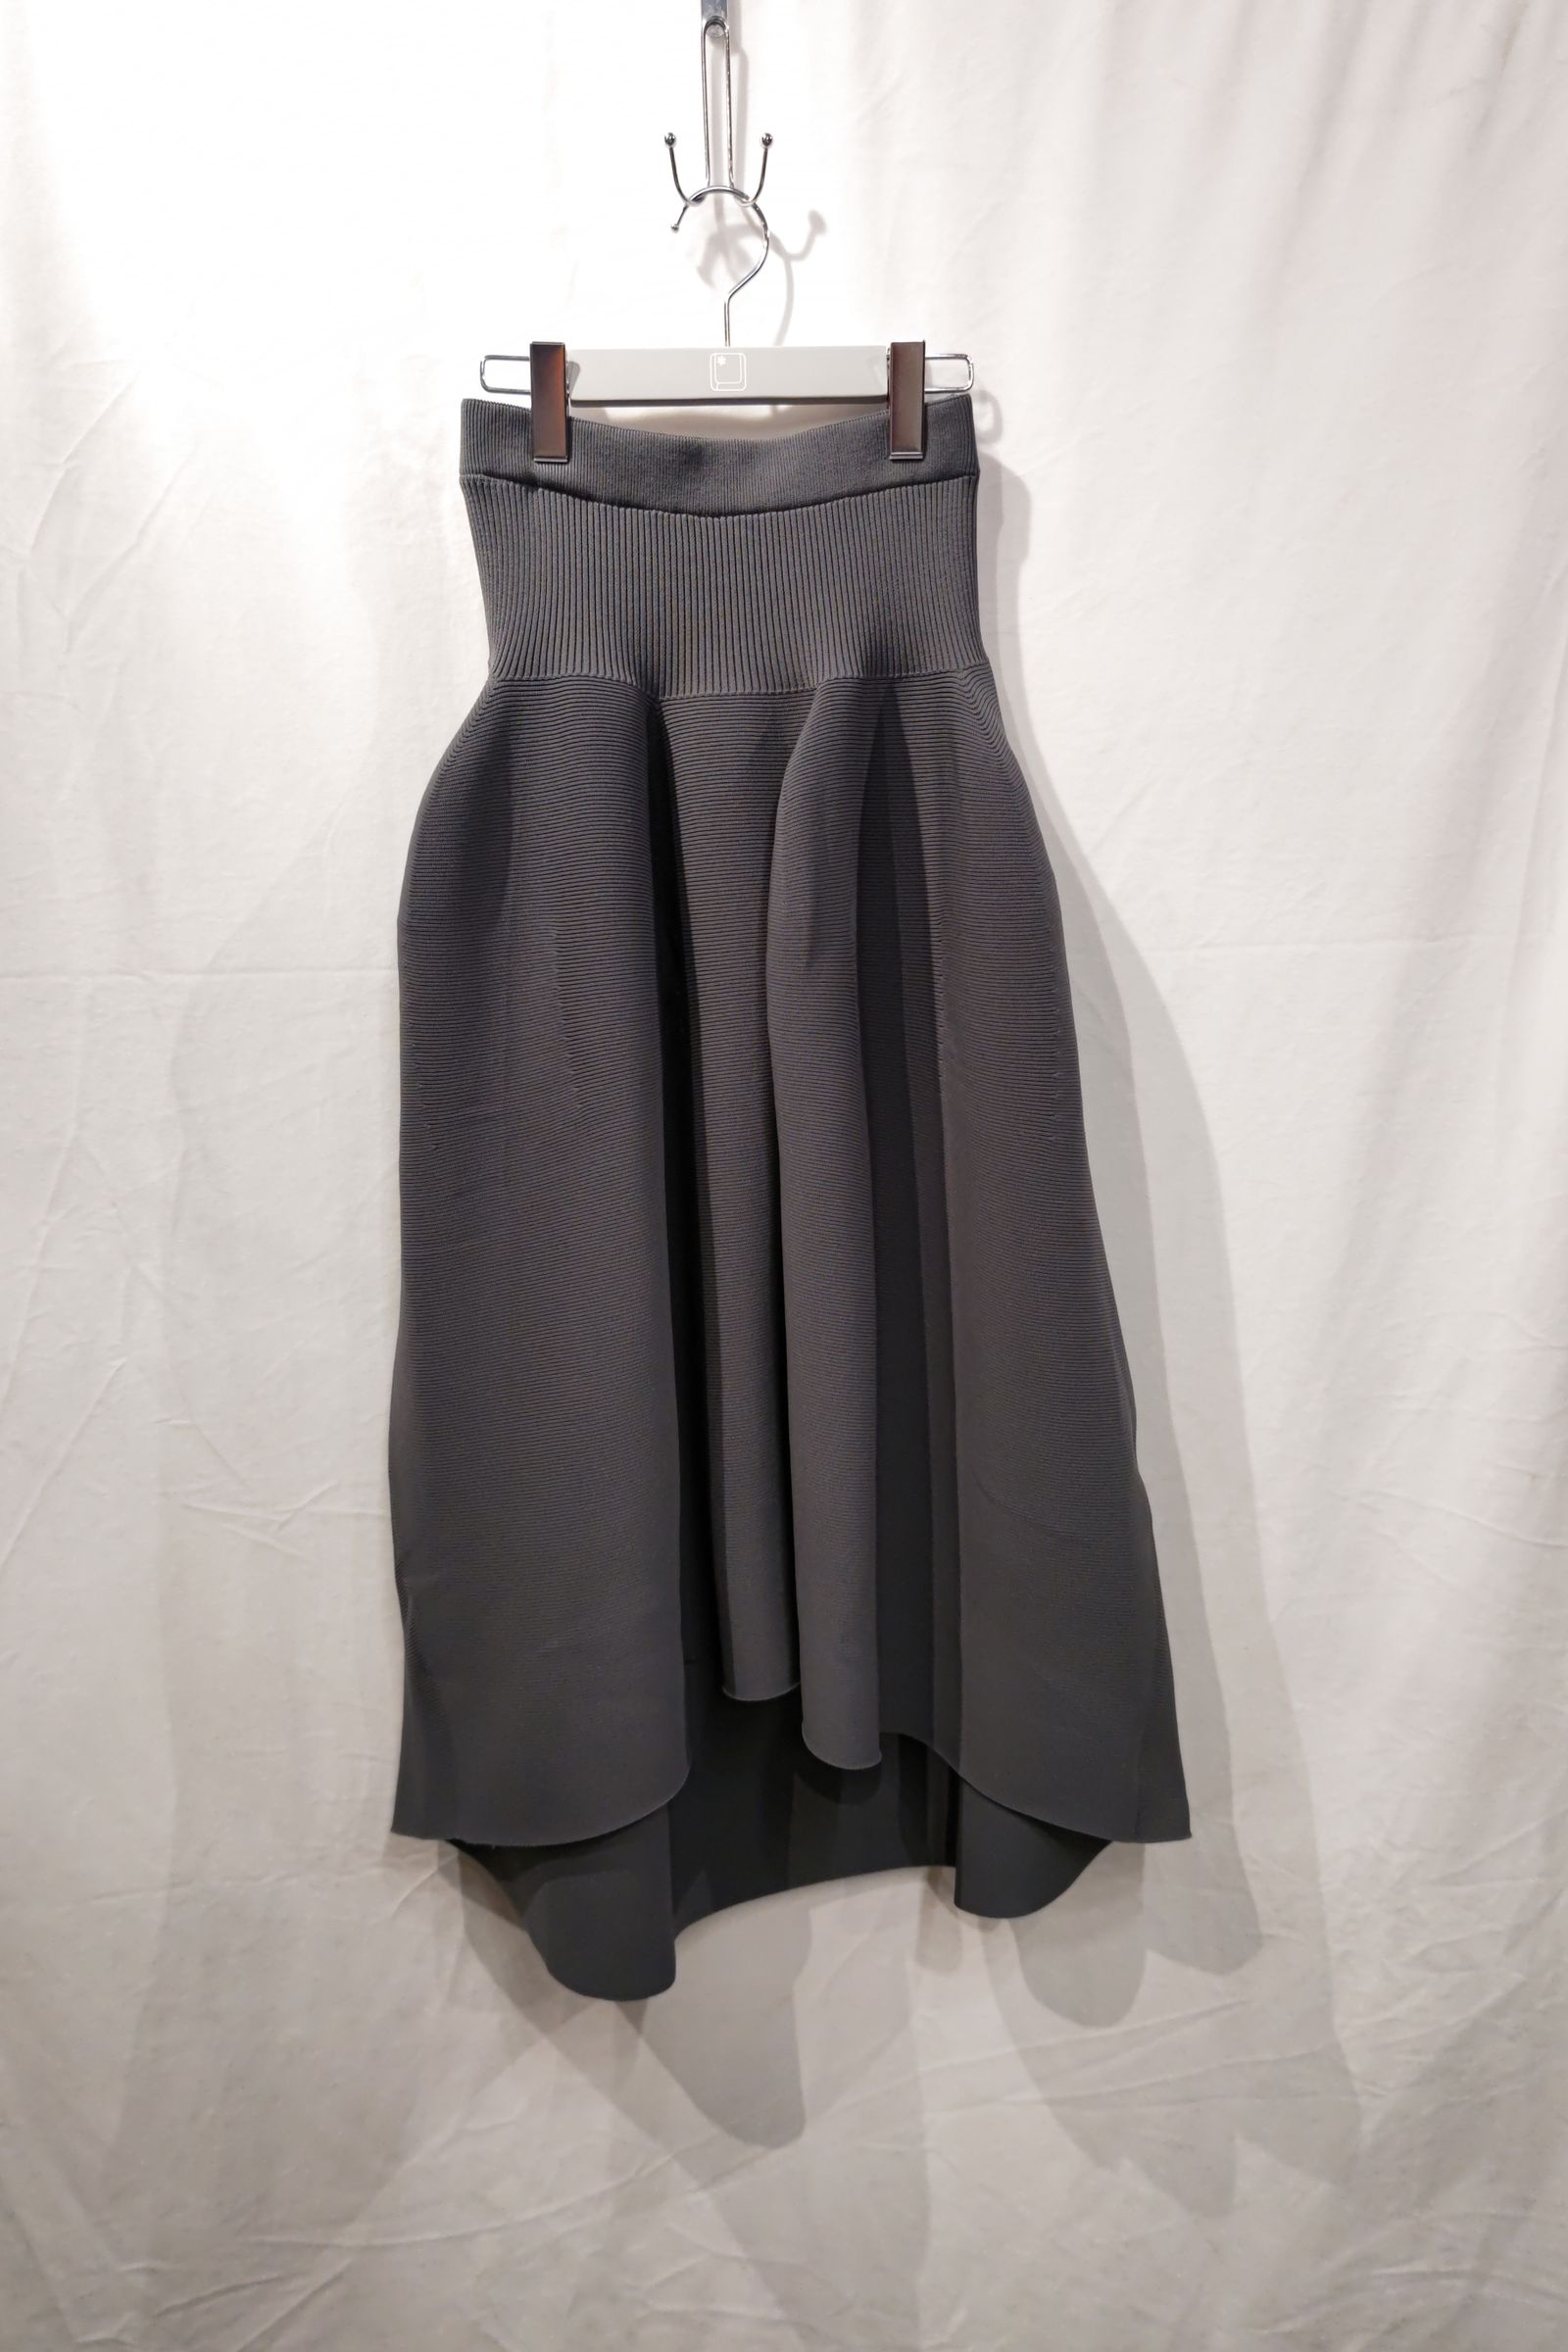 CFCL - pottery skirt 3 -dark gray- 23ss women | asterisk